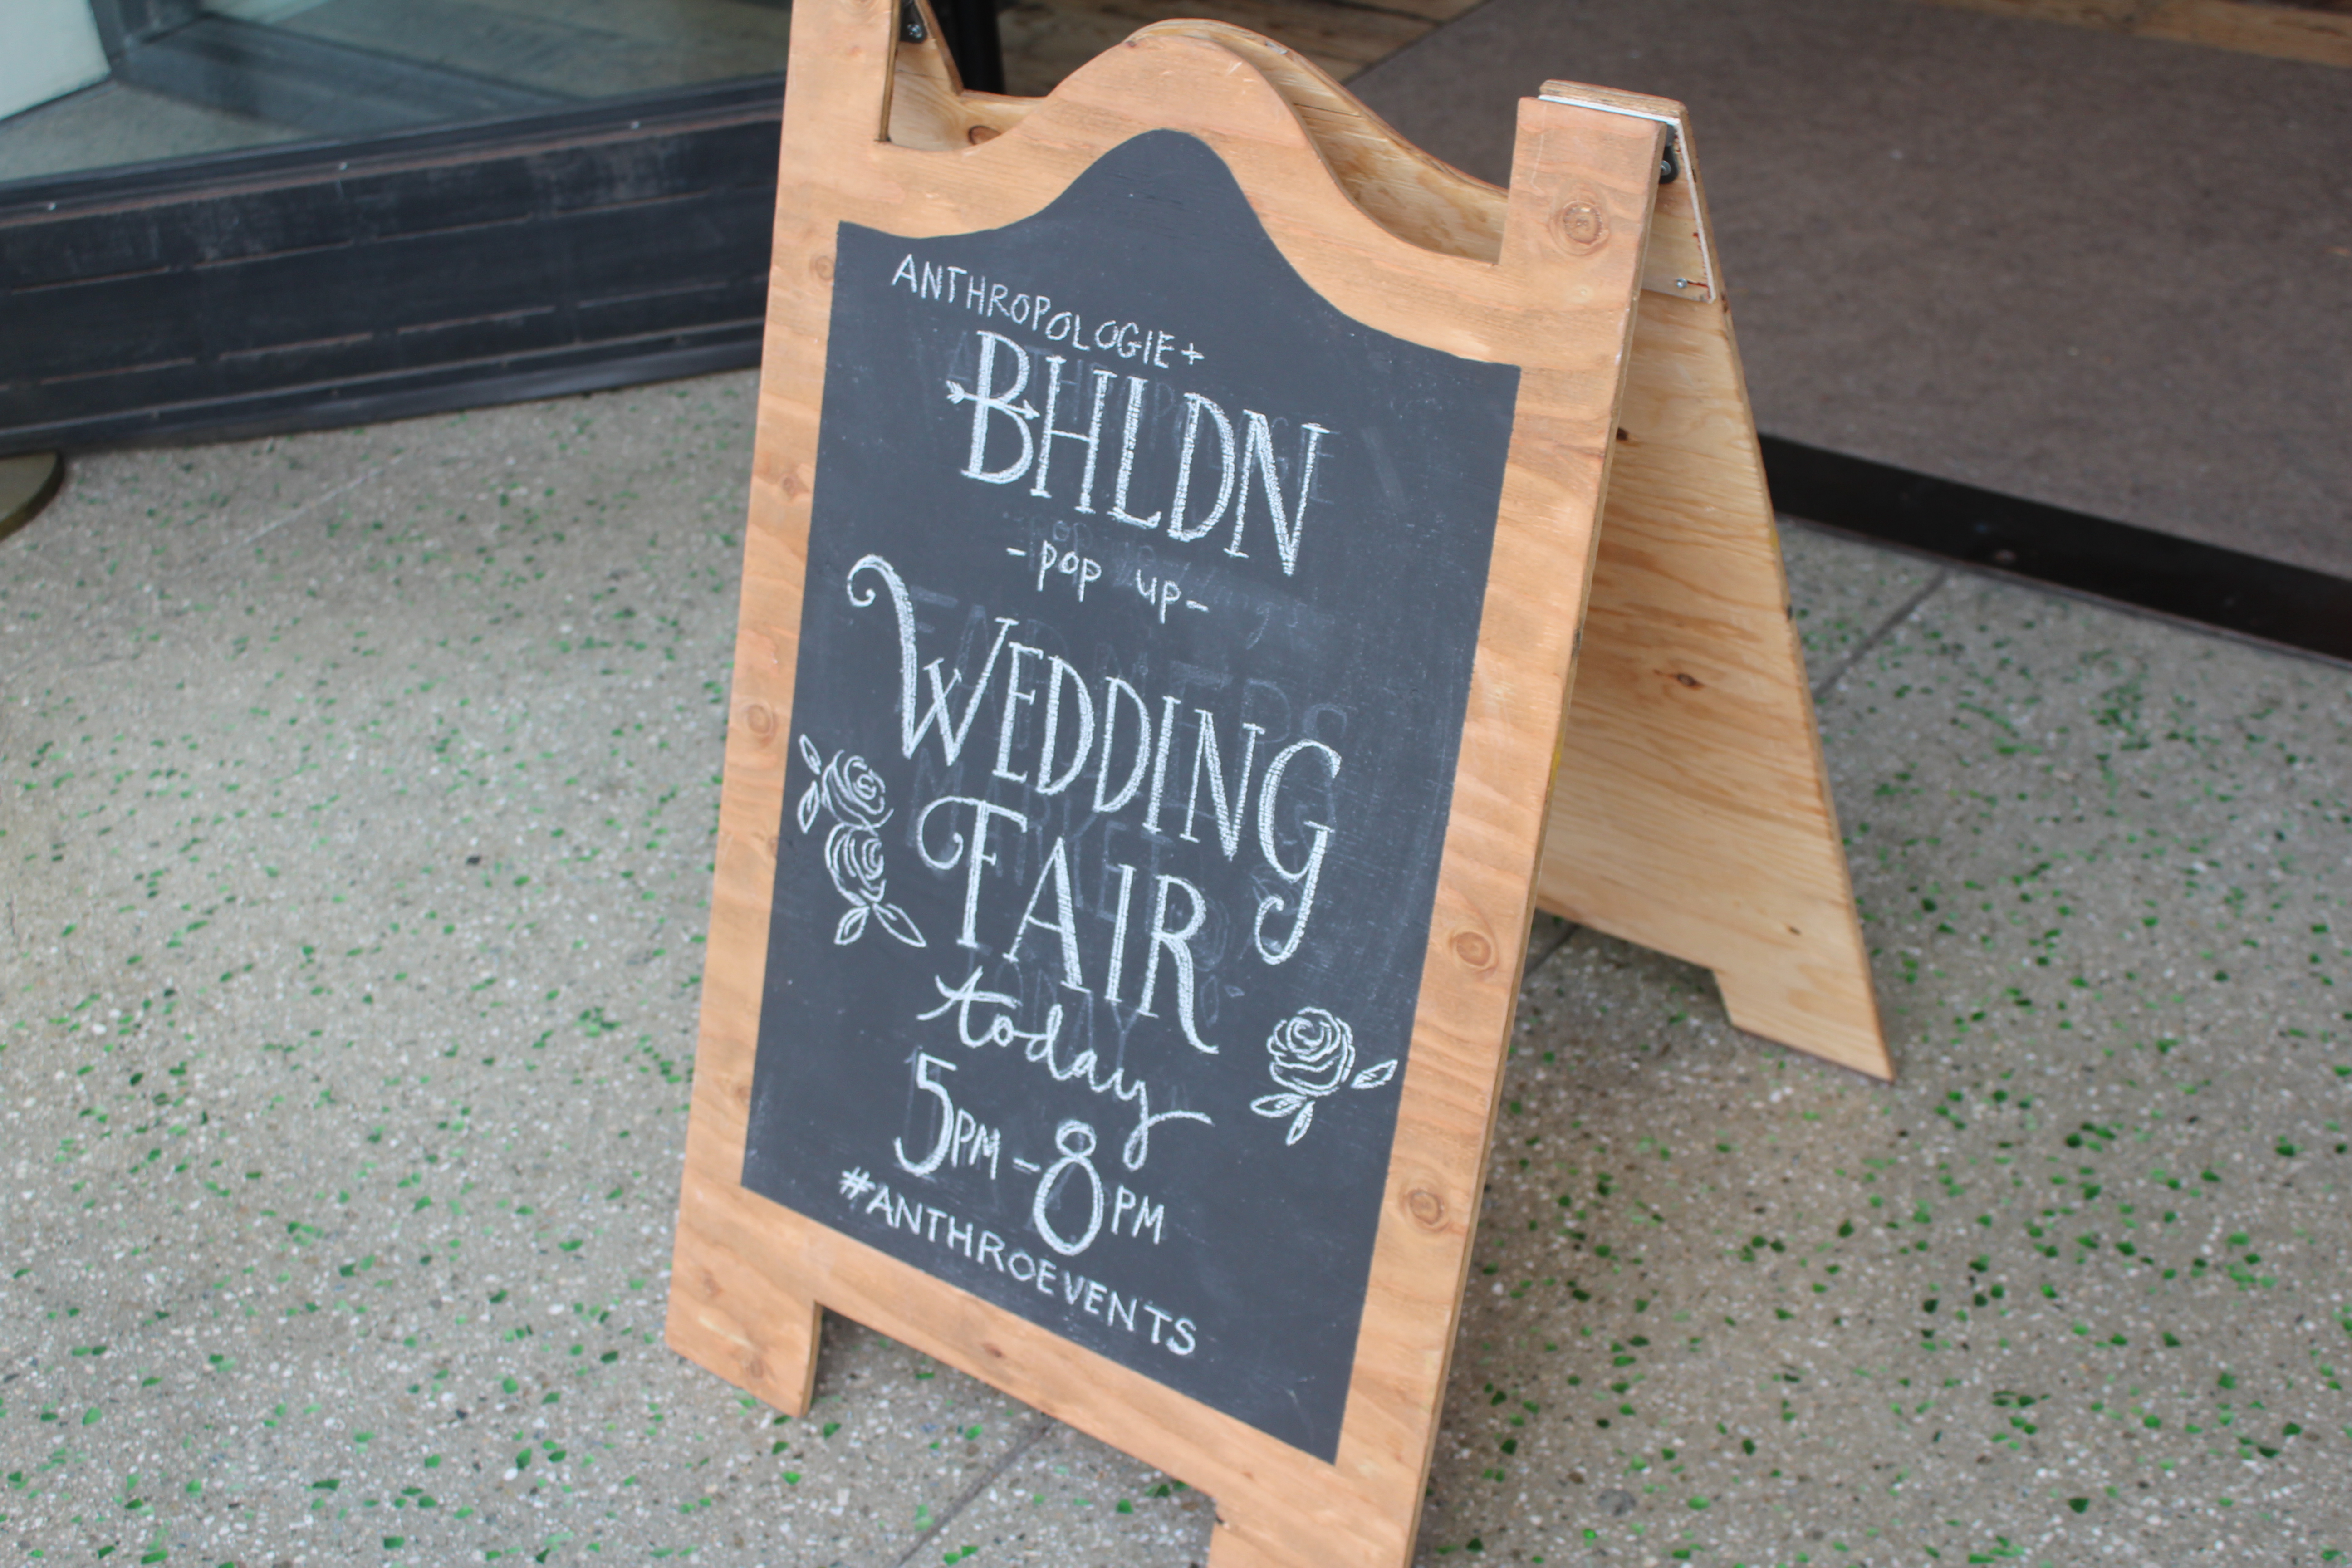 BHLDN Wedding Fair Sign